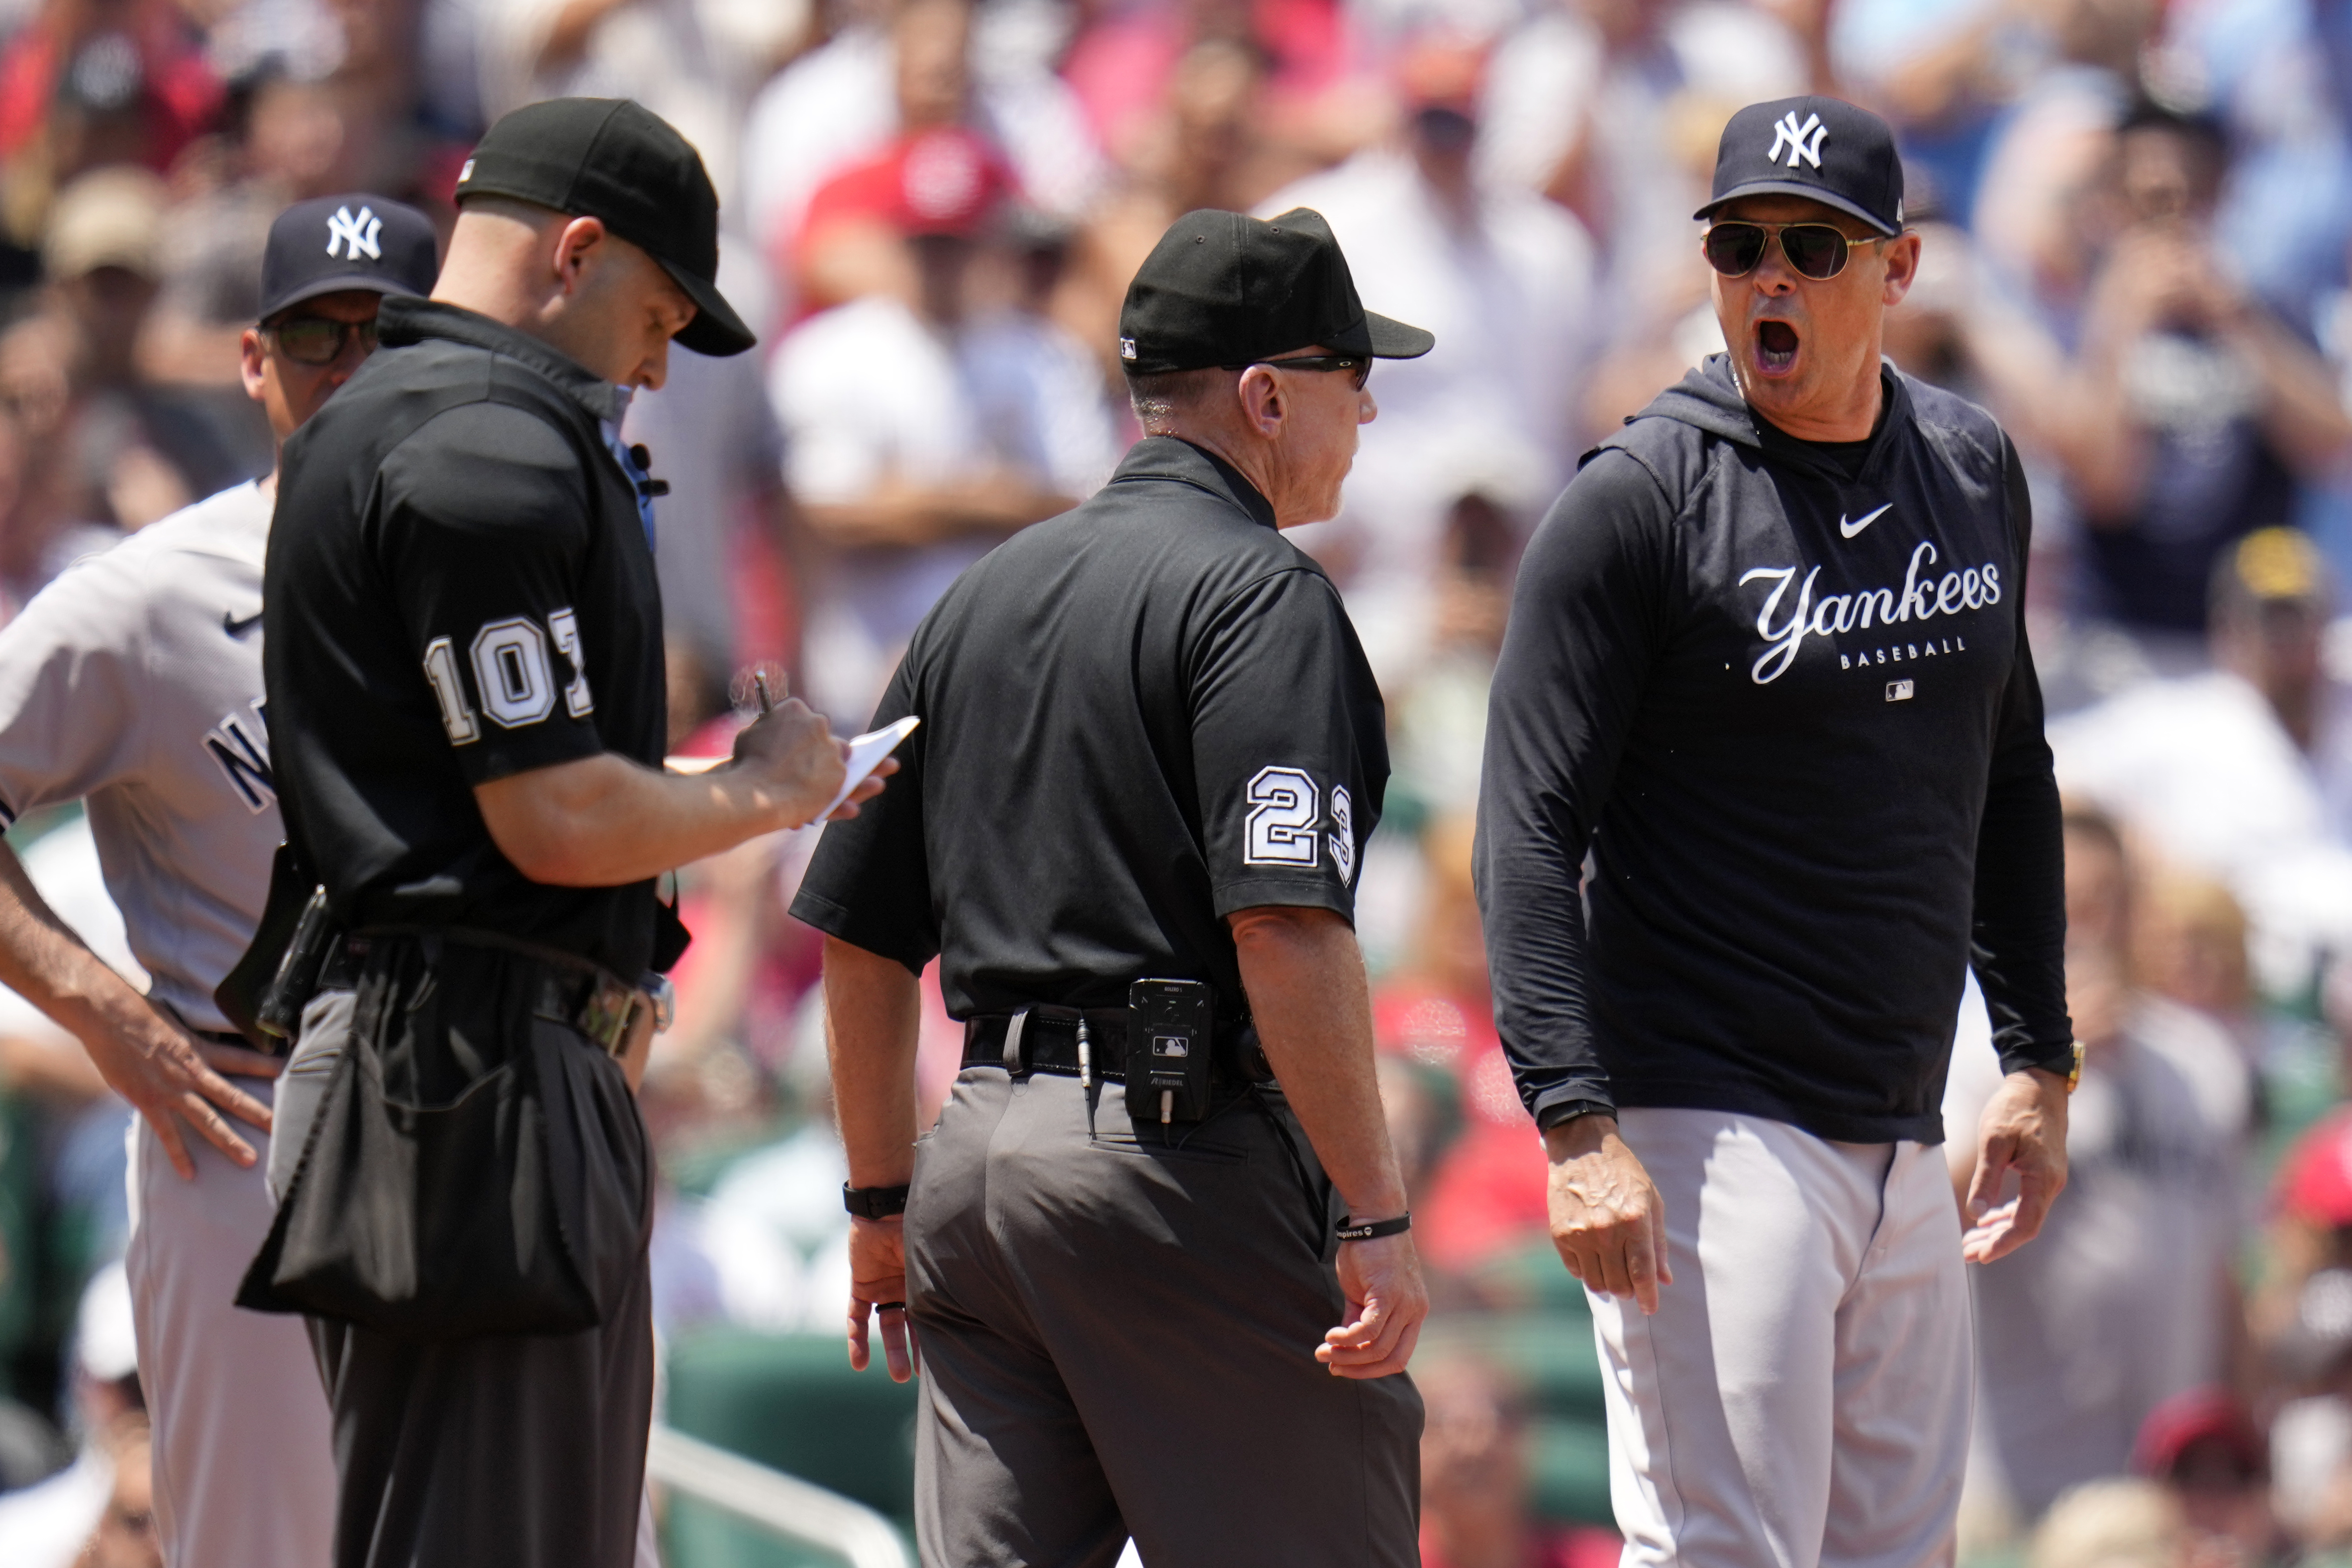 Harrison Bader explains Yankees' 'big win' over Orioles